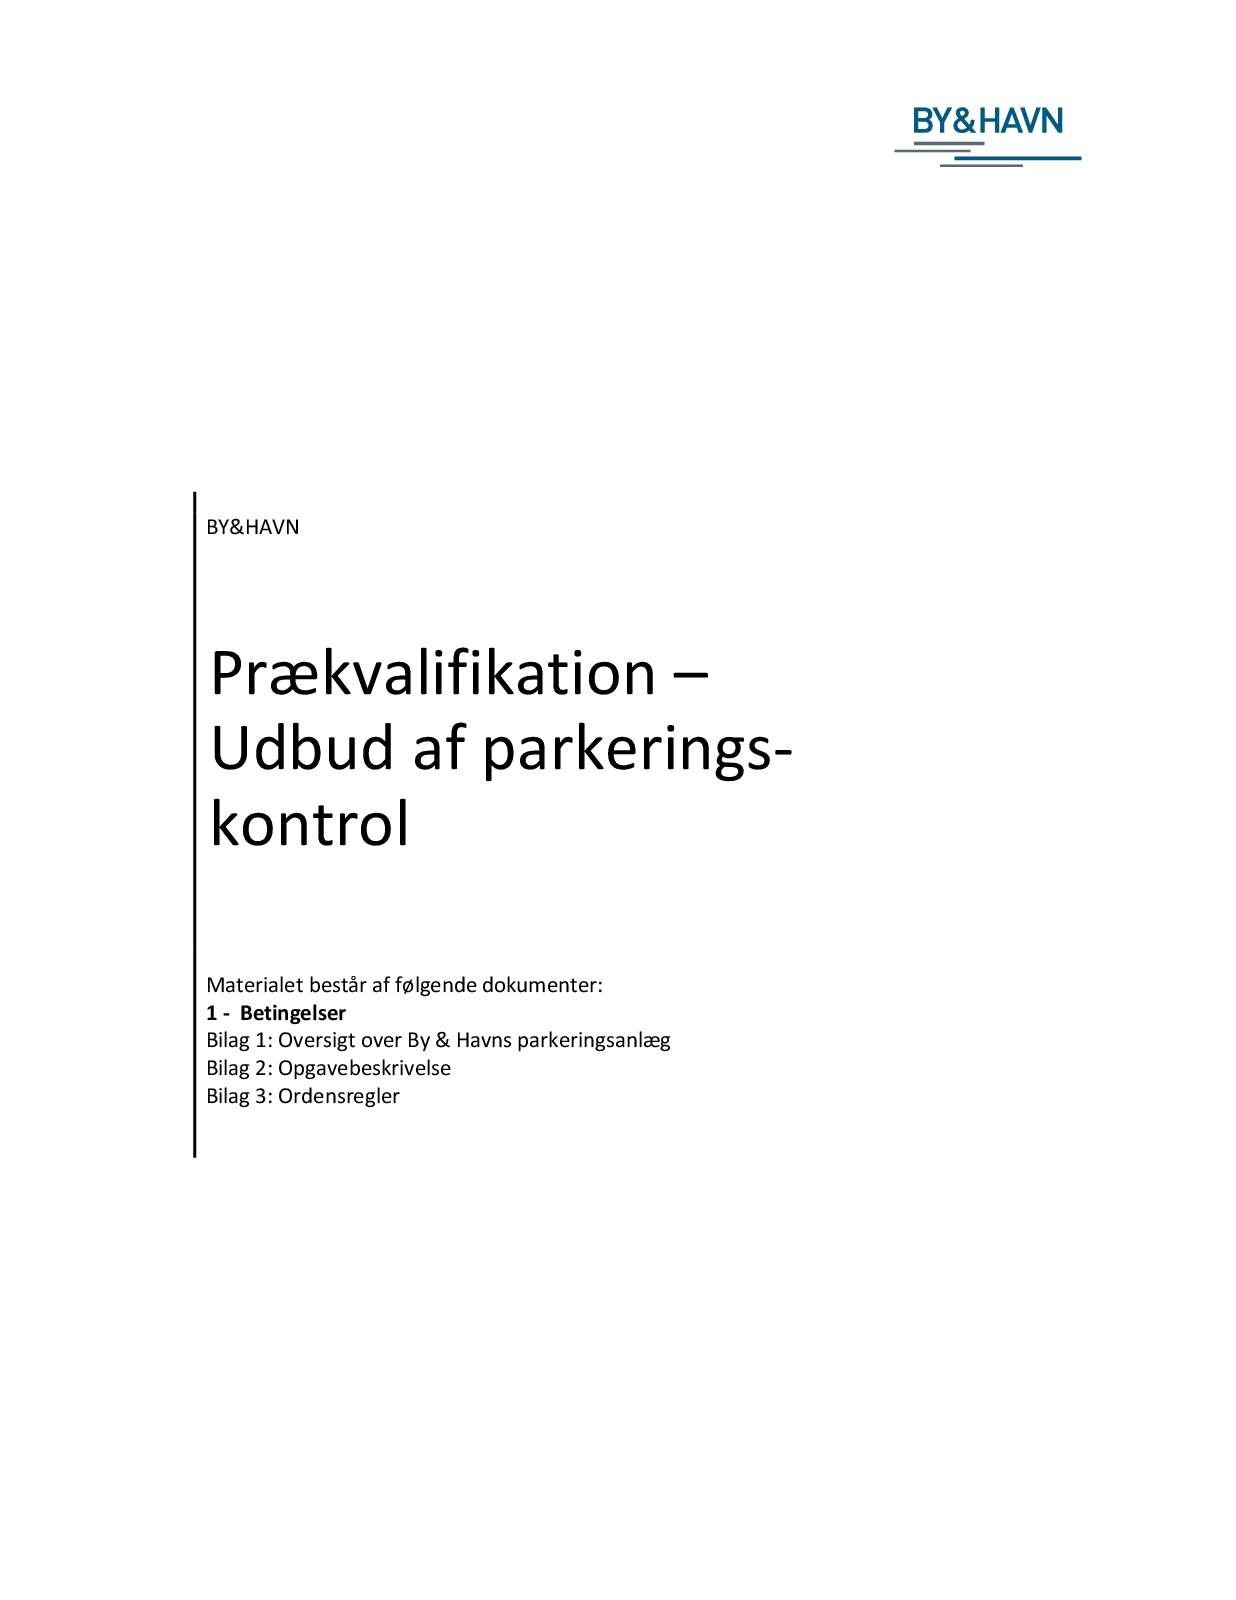 Prækvalifikation Udbud af parkeringskontrol Betingelser